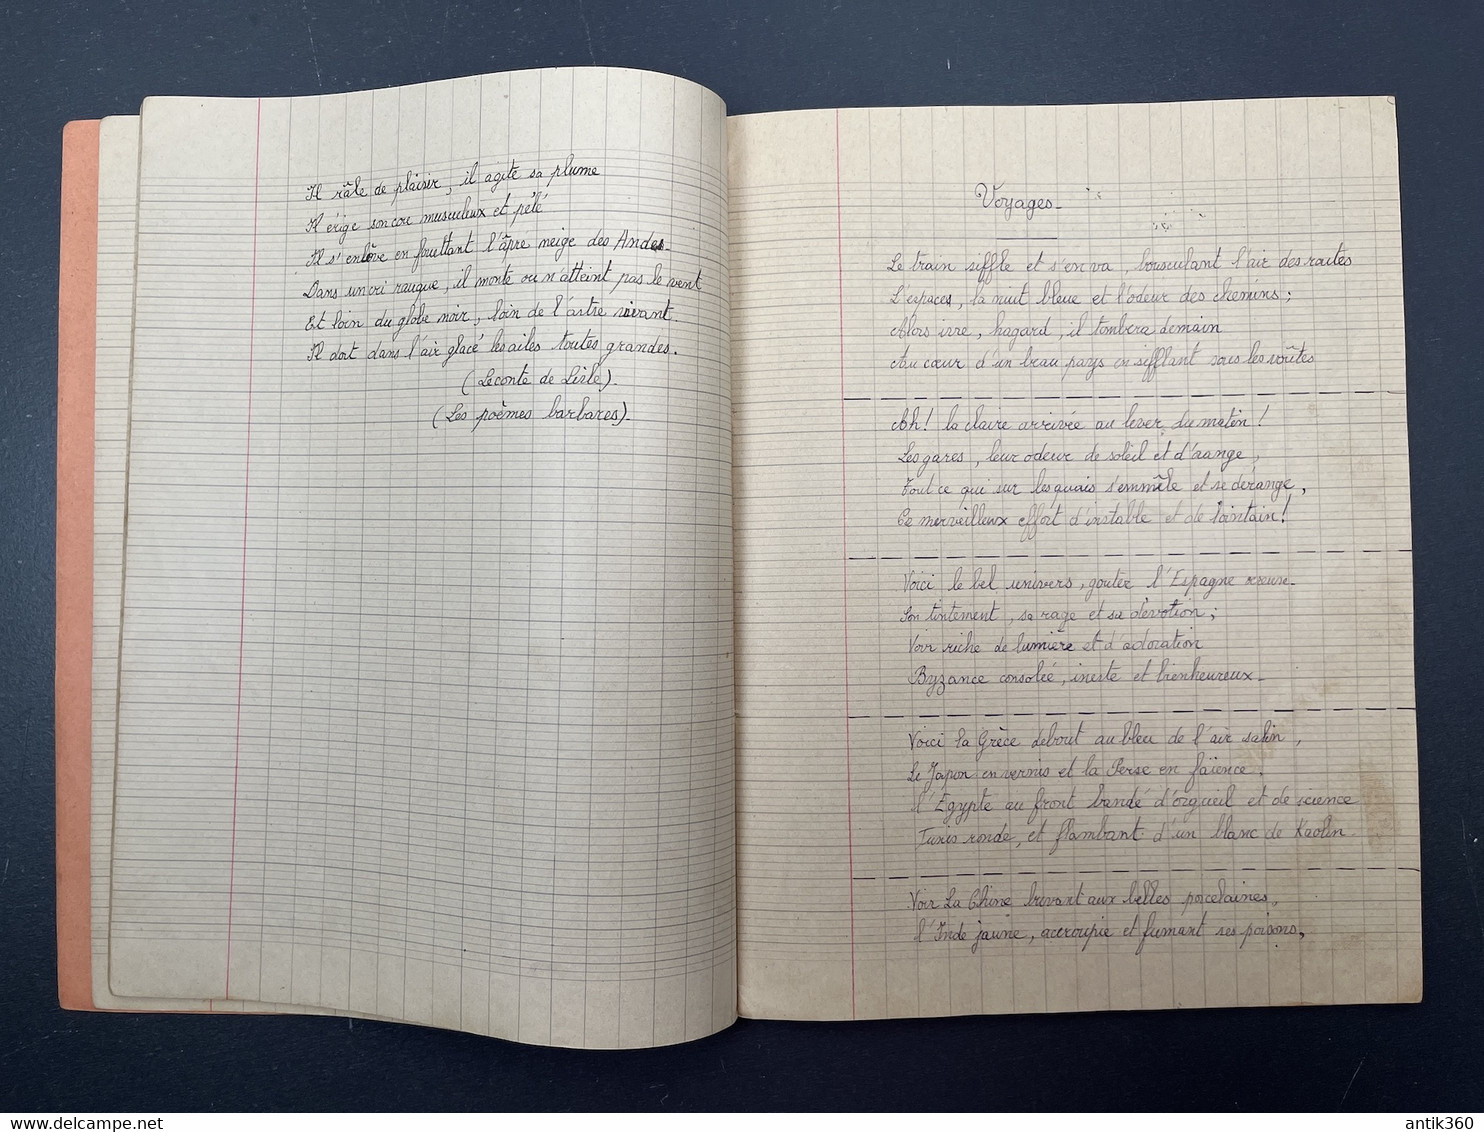 BOURBON-LANCY Cahier De Récitations Scolaire Ecole Publique Laïque Circa 1945 - Diplômes & Bulletins Scolaires